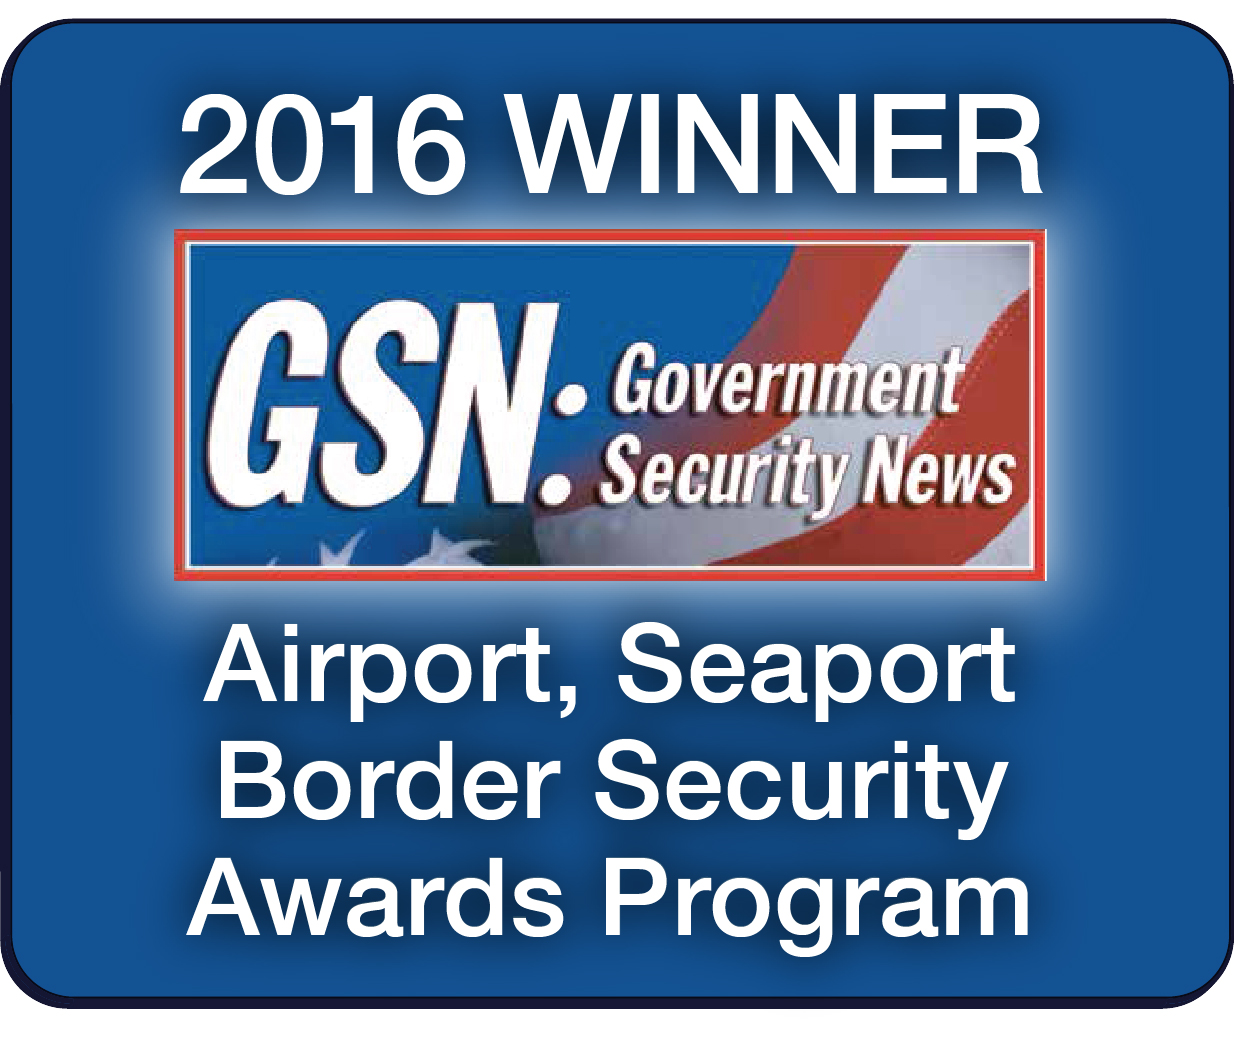 Government Security News Award